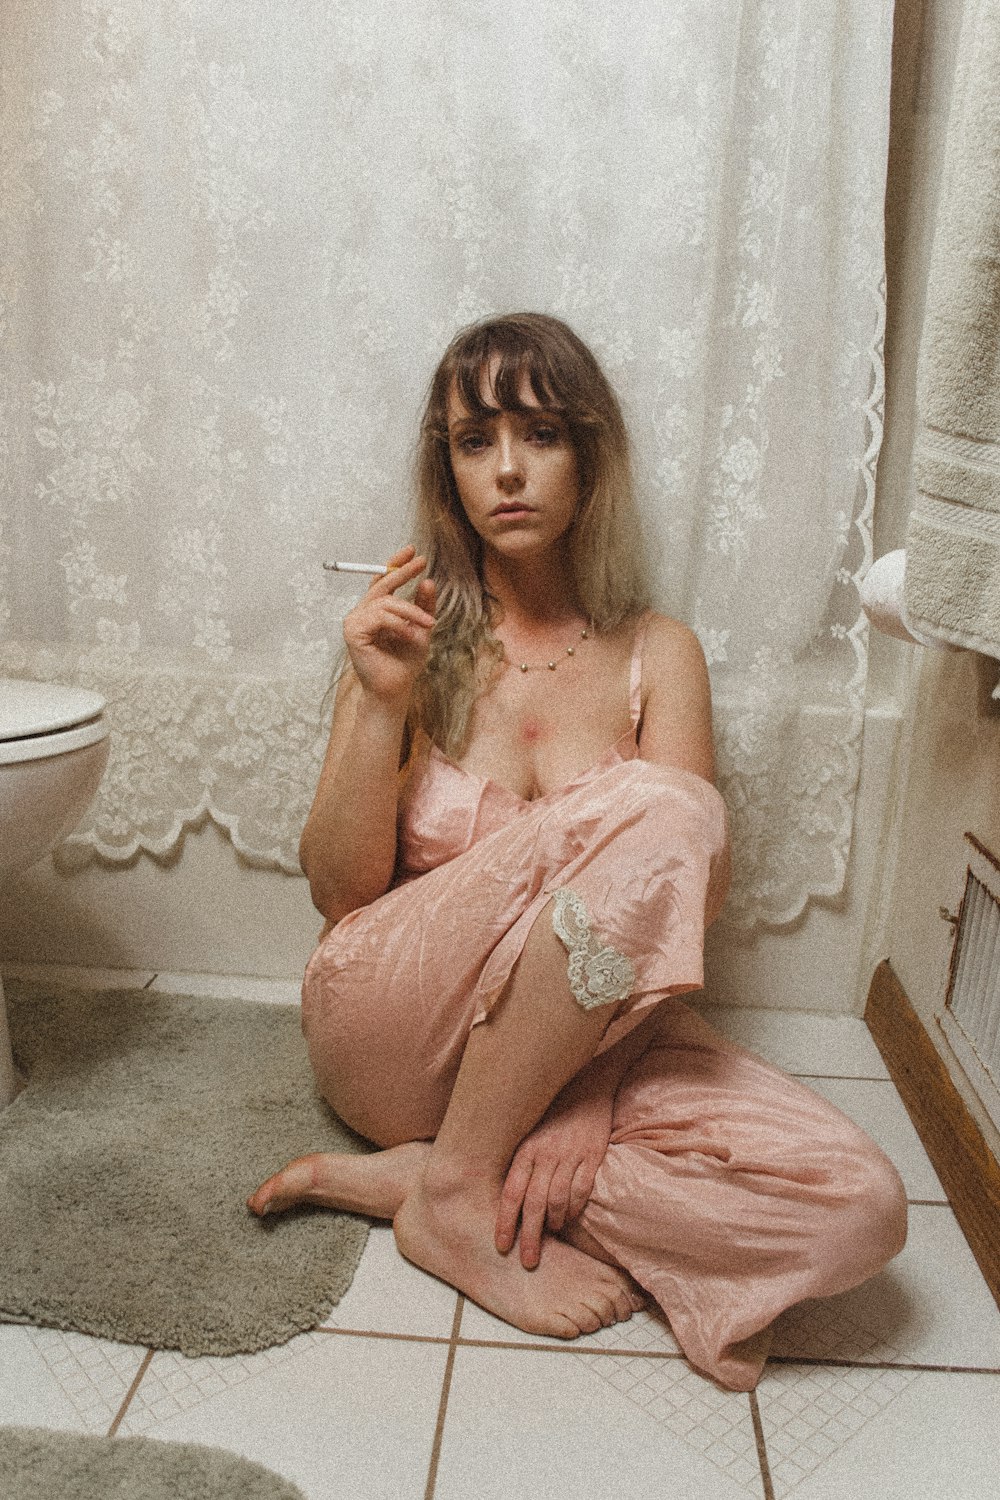 Mujer sentada con pantalones de pijama fumando dentro del baño